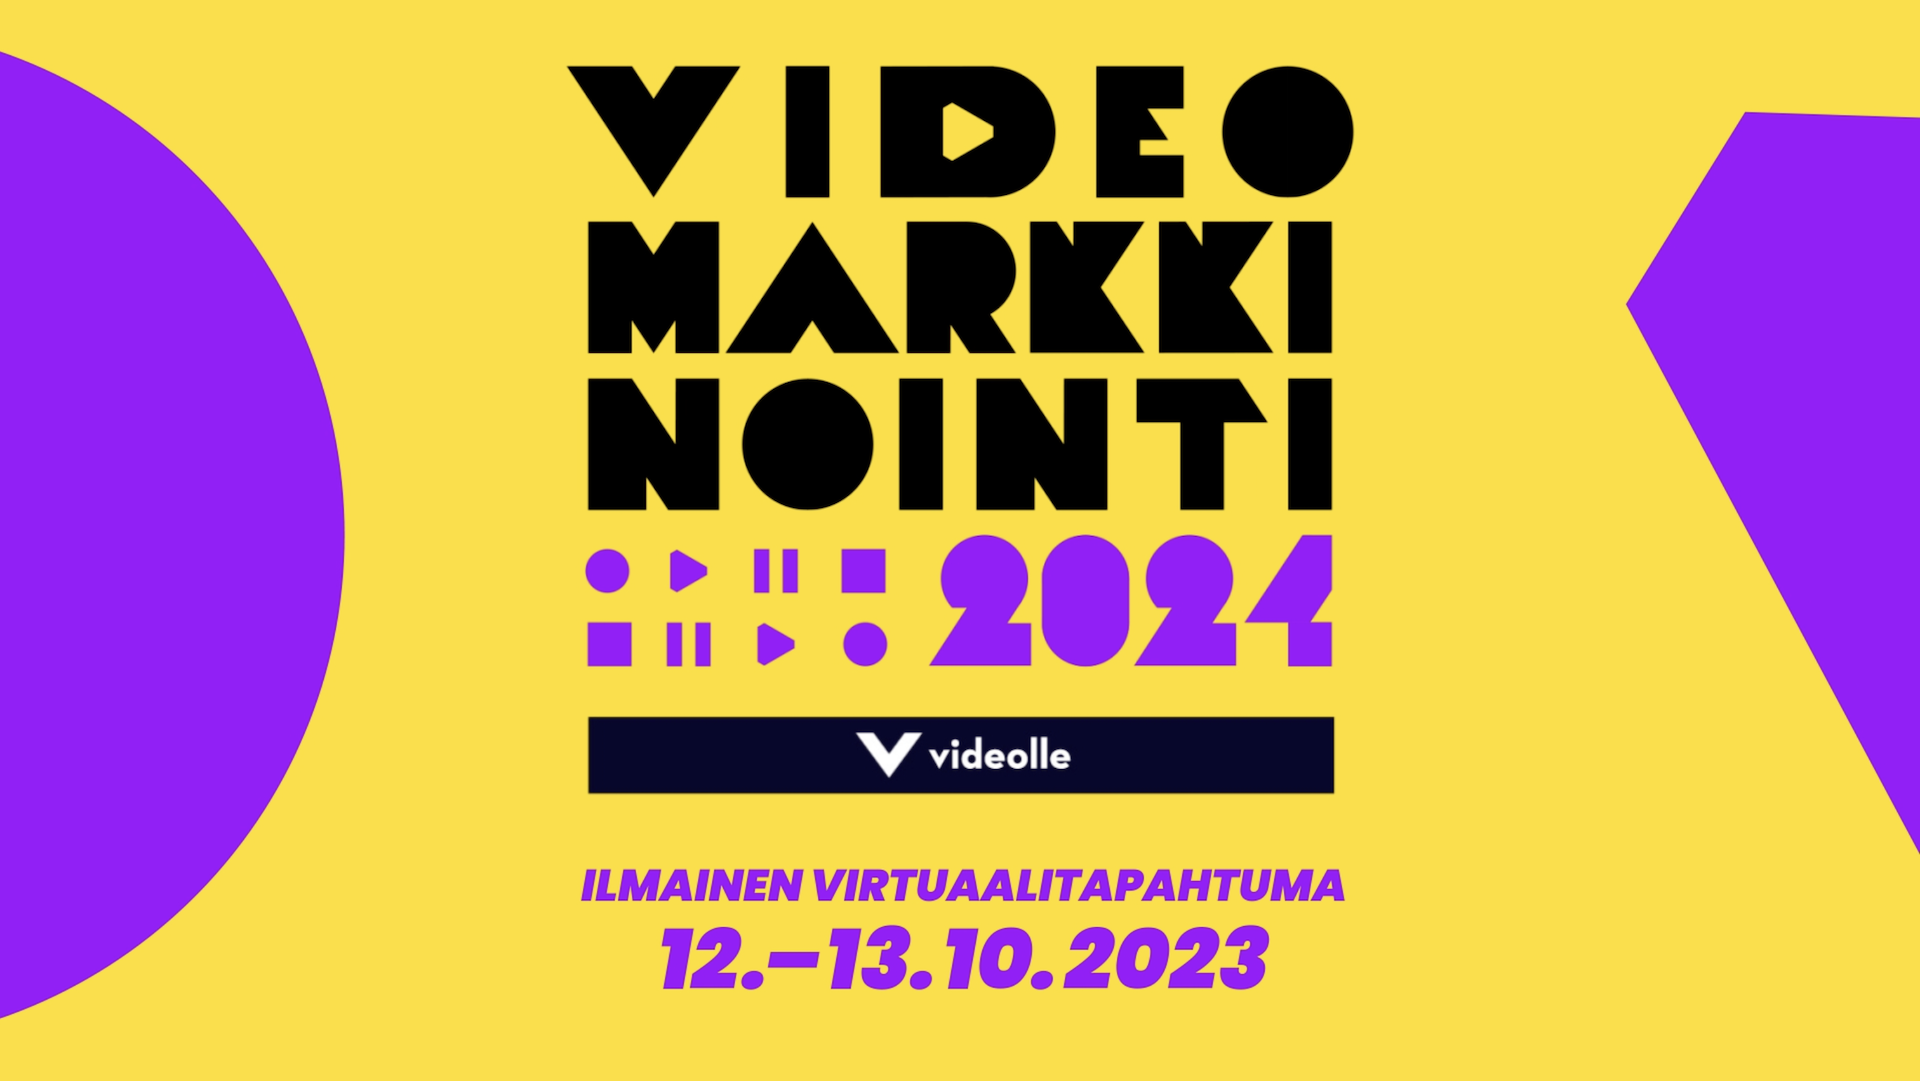 Virtuaalitapahtuma: Videomarkkinointi 2024